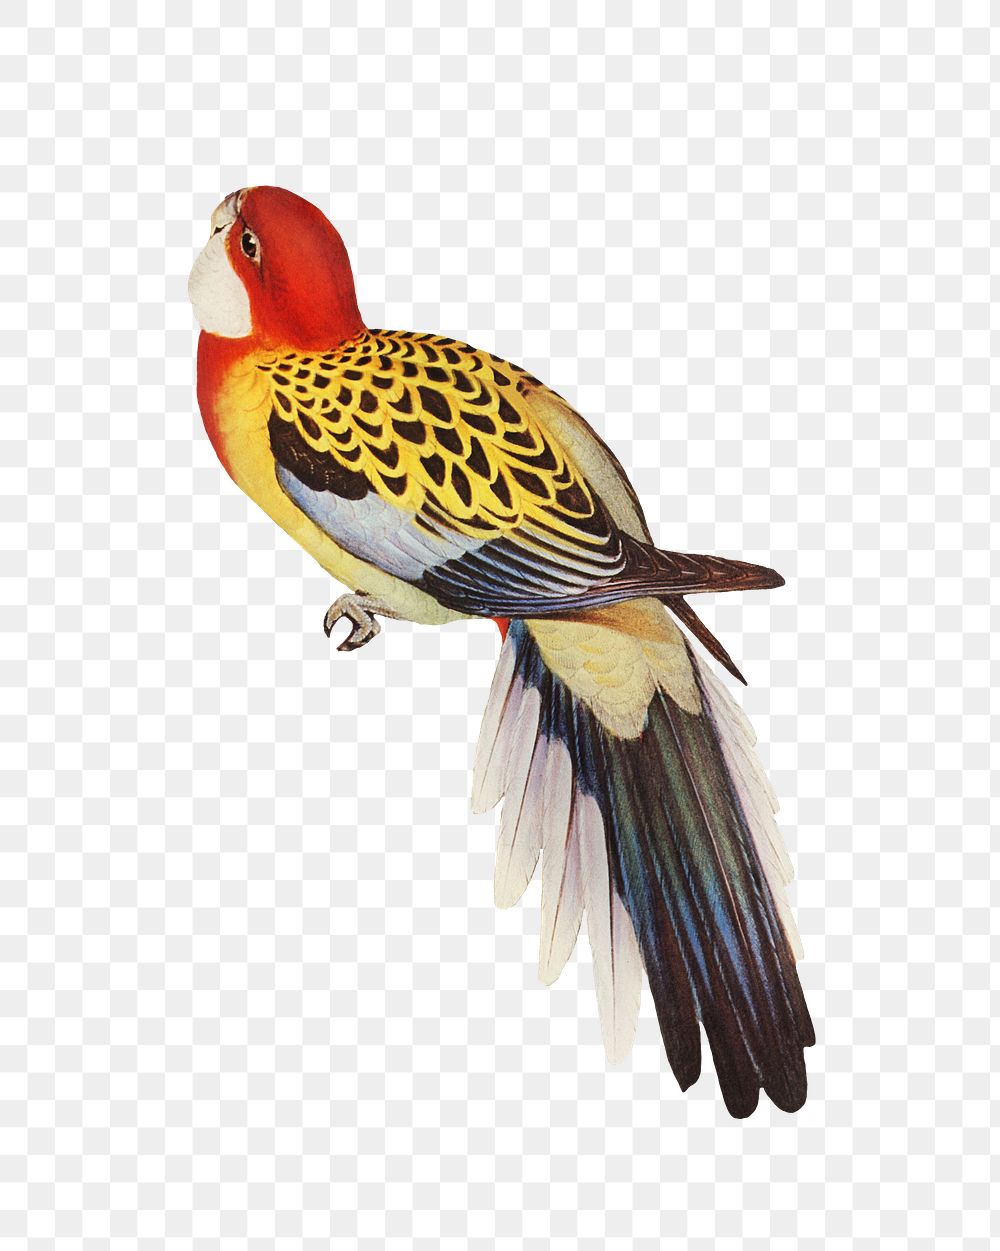 Splendid parakeet png bird sticker, transparent background